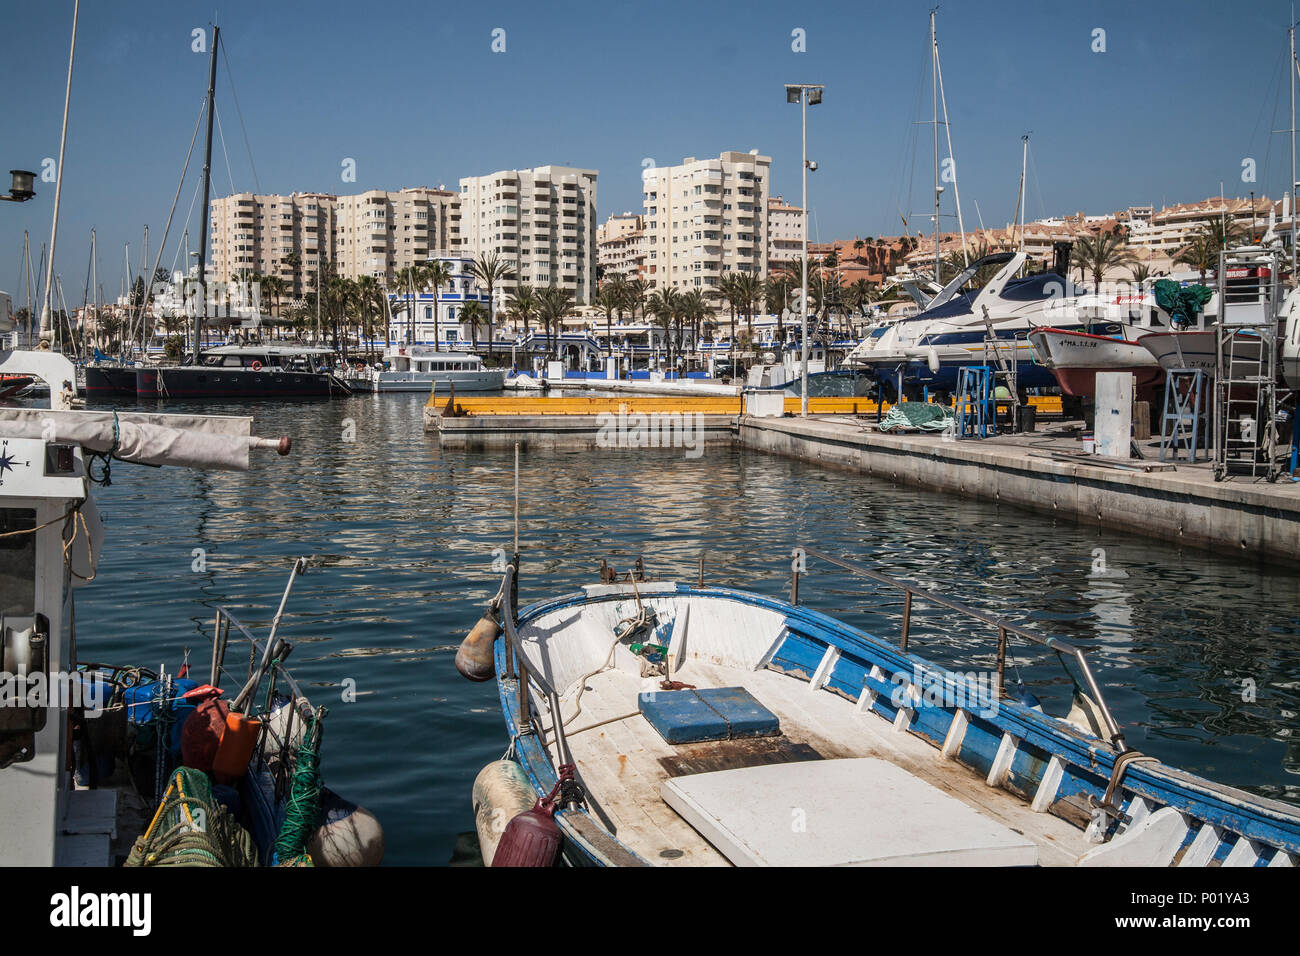 Estepona port & marina, Costa del Sol, Stock Photo